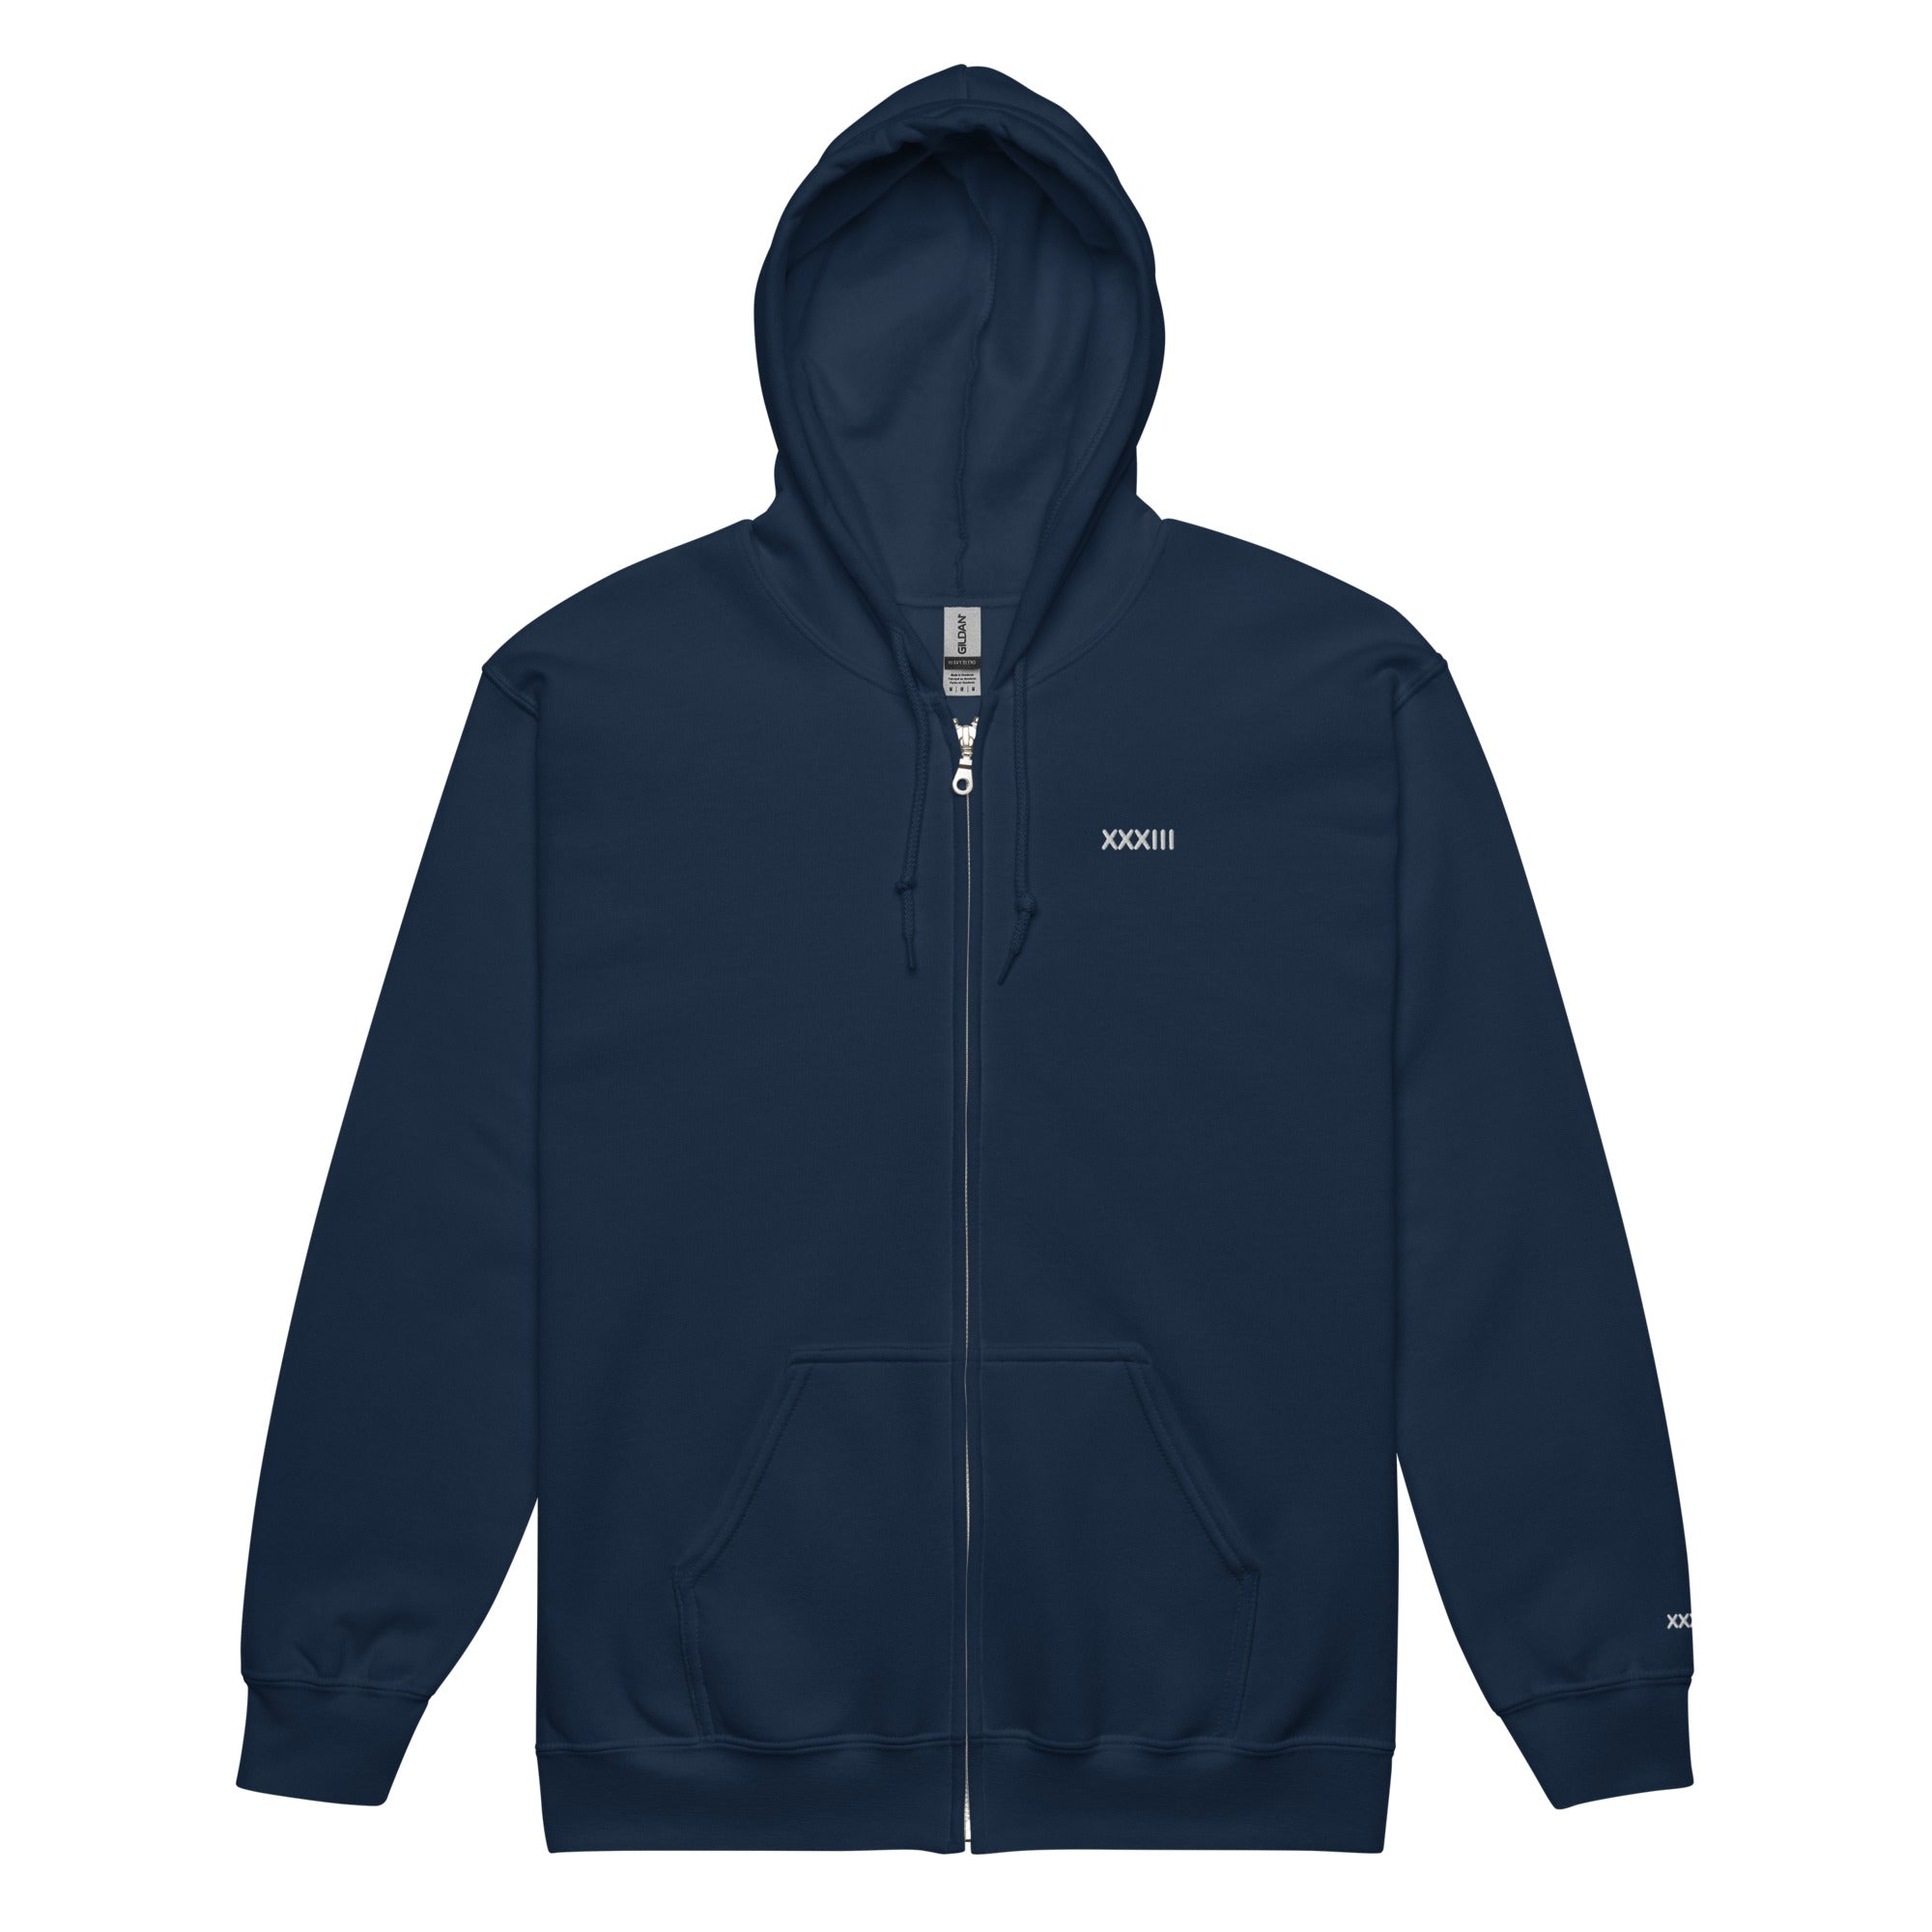 XXXIIIAD Unisex heavy blend zip hoodie